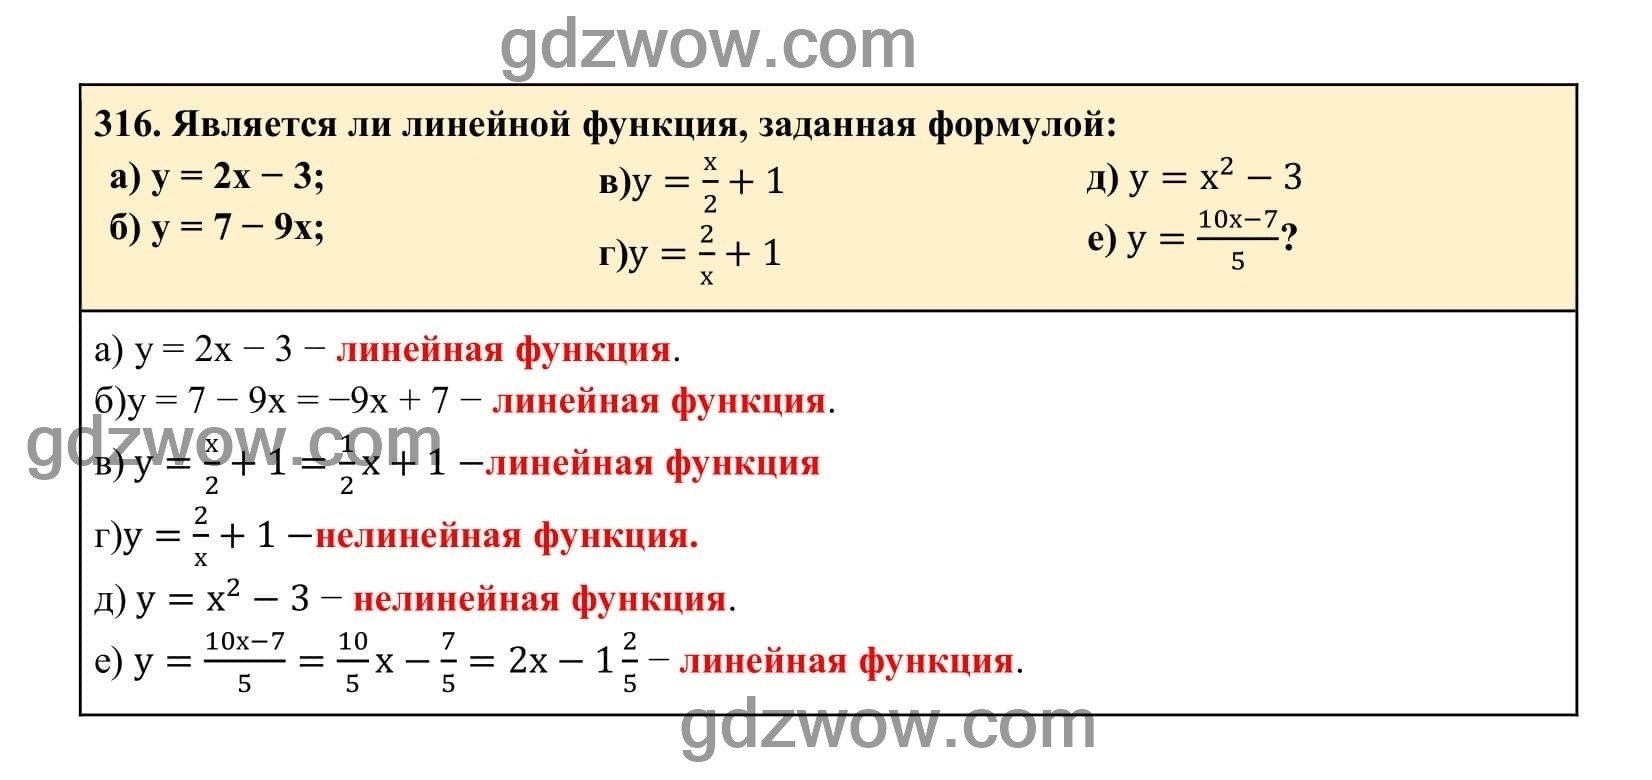 Упражнение 316 - ГДЗ по Алгебре 7 класс Учебник Макарычев (решебник) - GDZwow